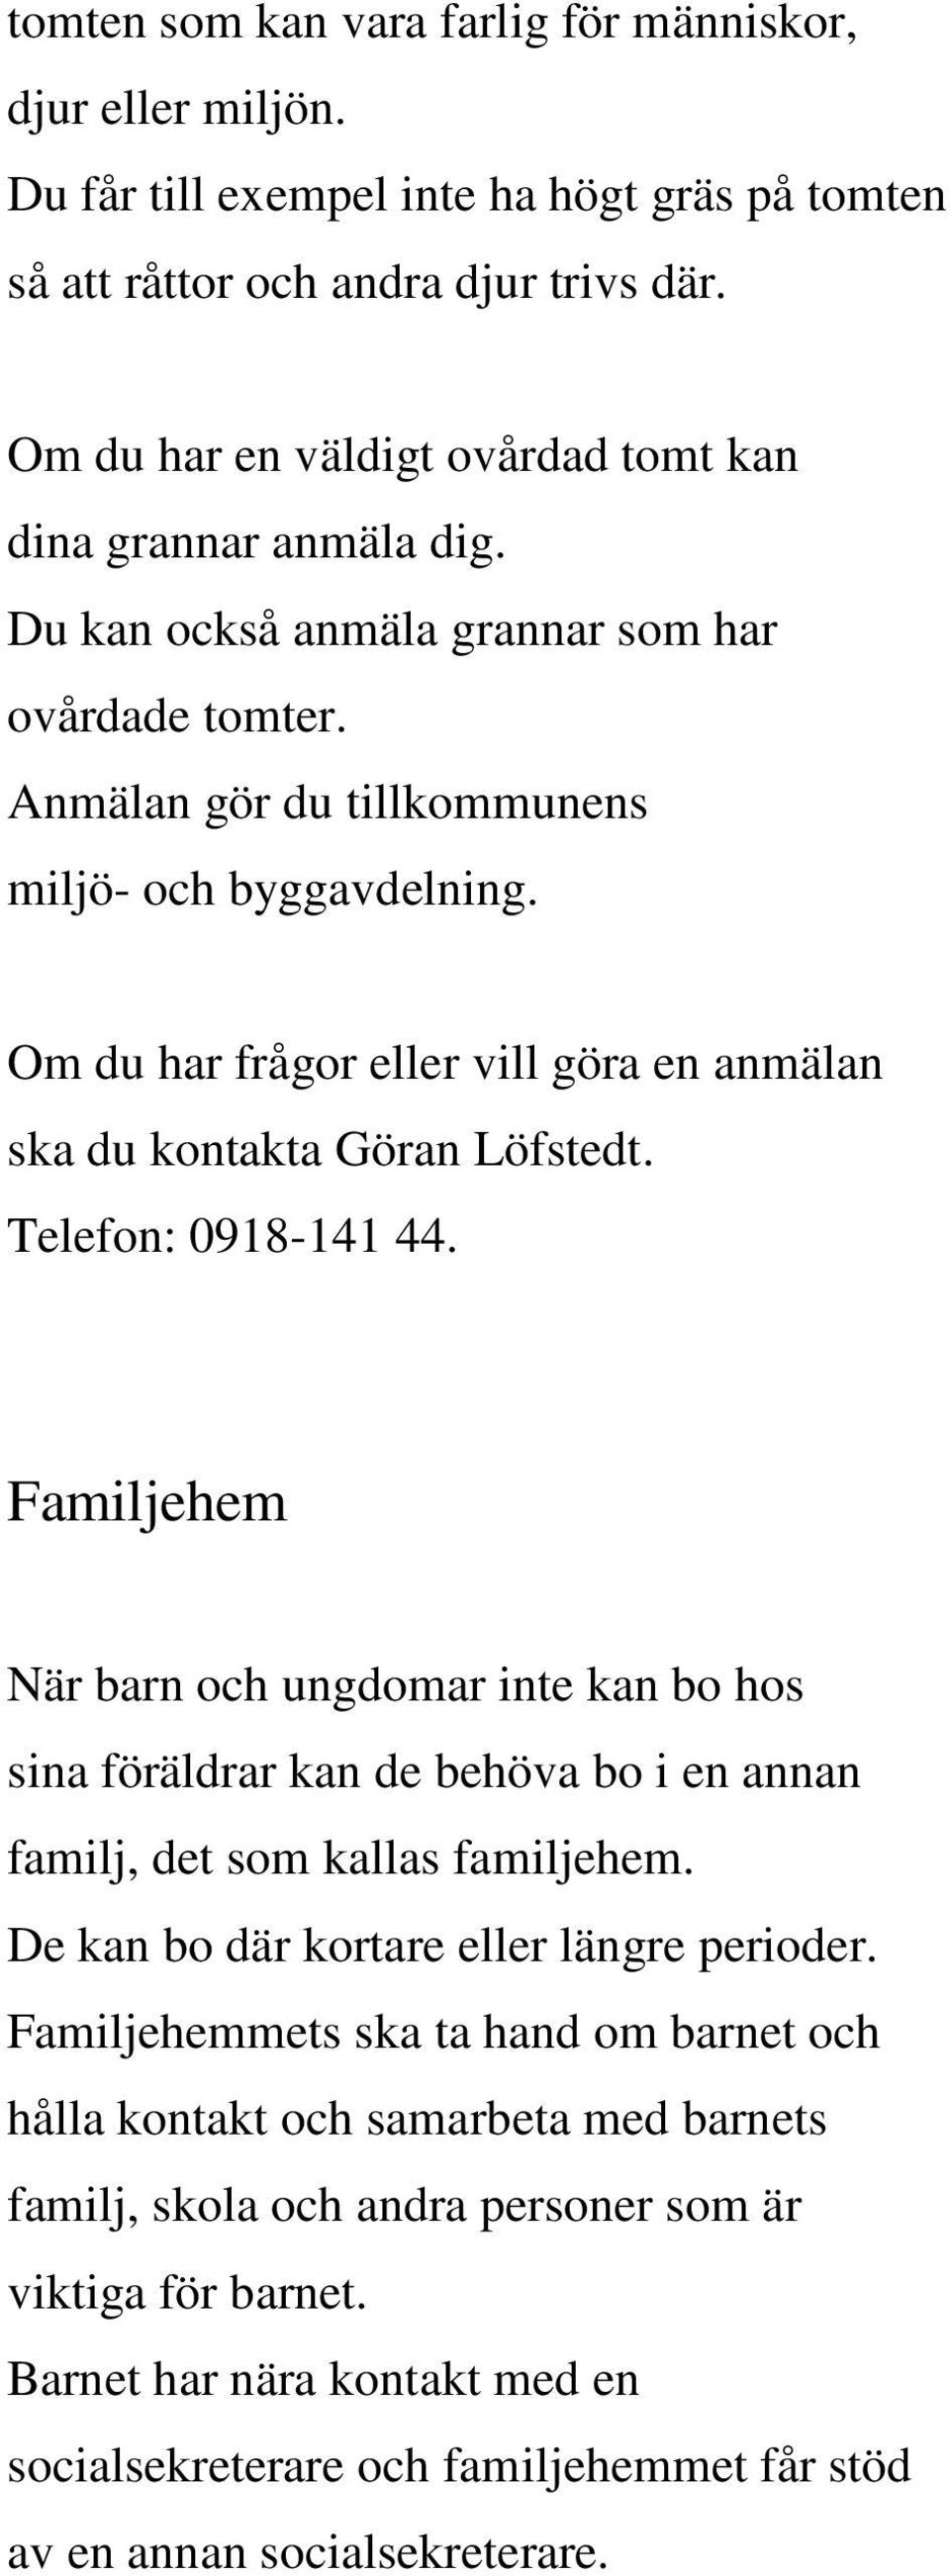 Om du har frågor eller vill göra en anmälan ska du kontakta Göran Löfstedt. Telefon: 0918-141 44.